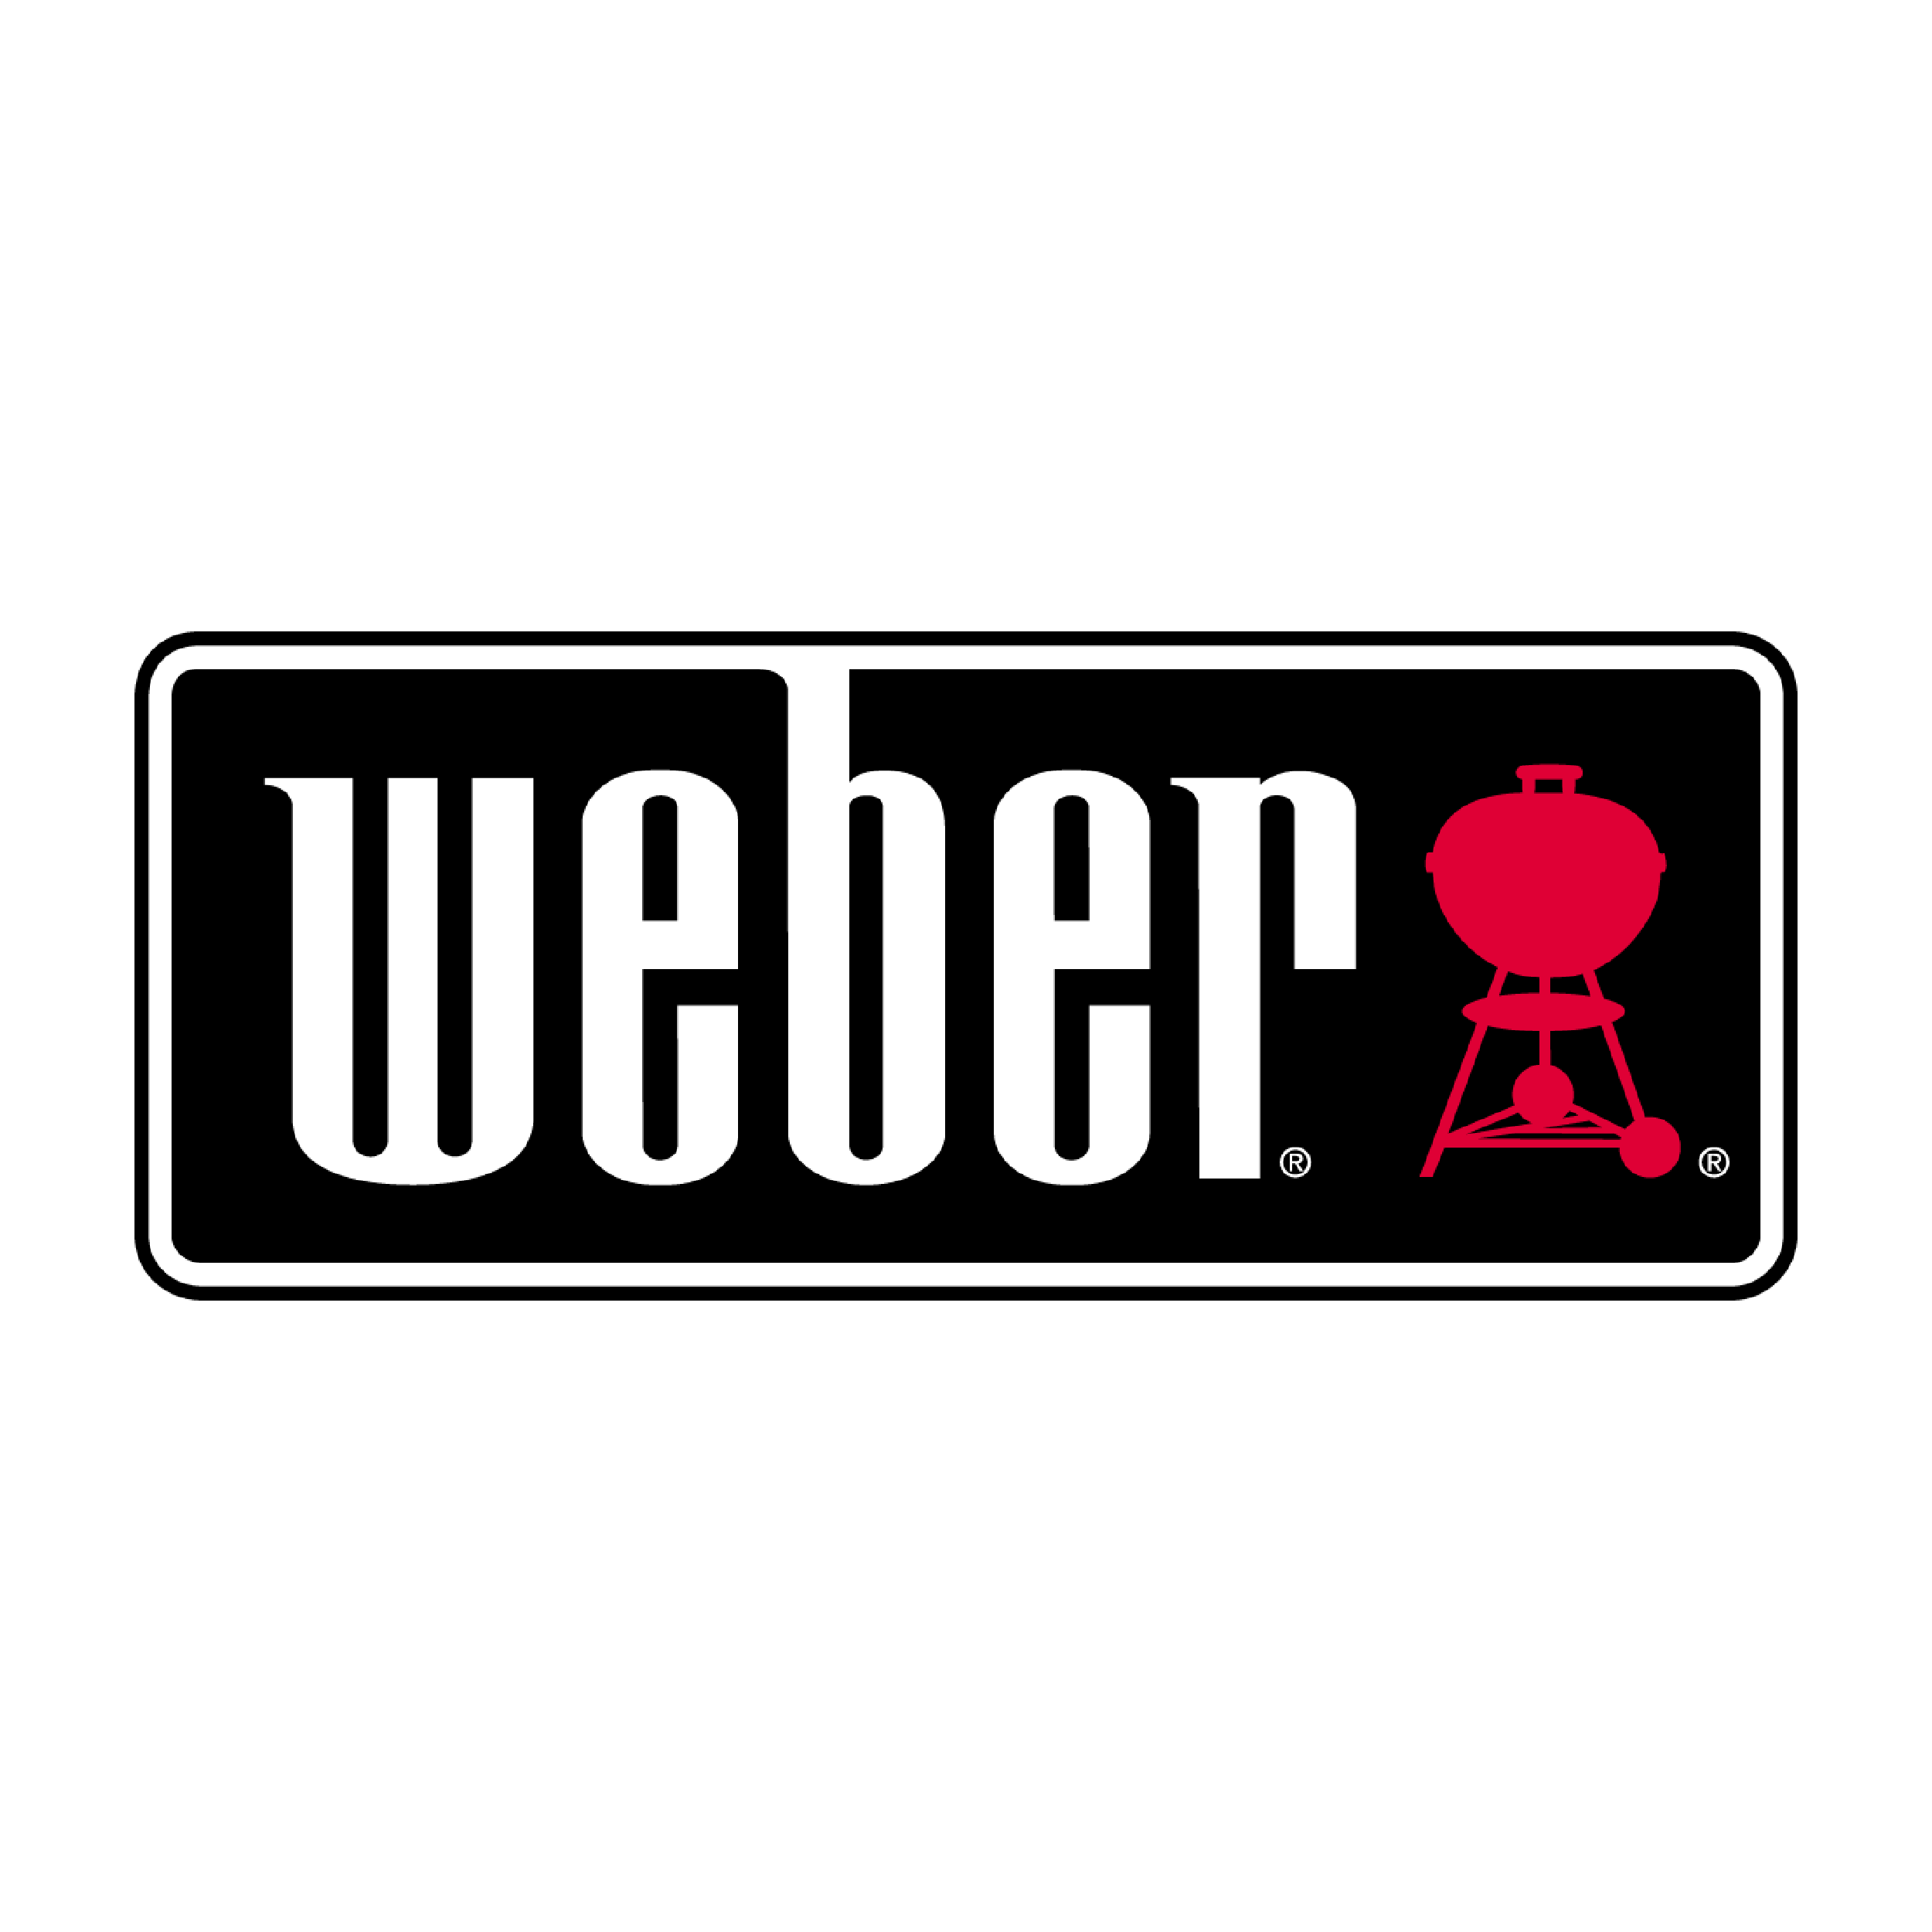 weber-logo-tile.png